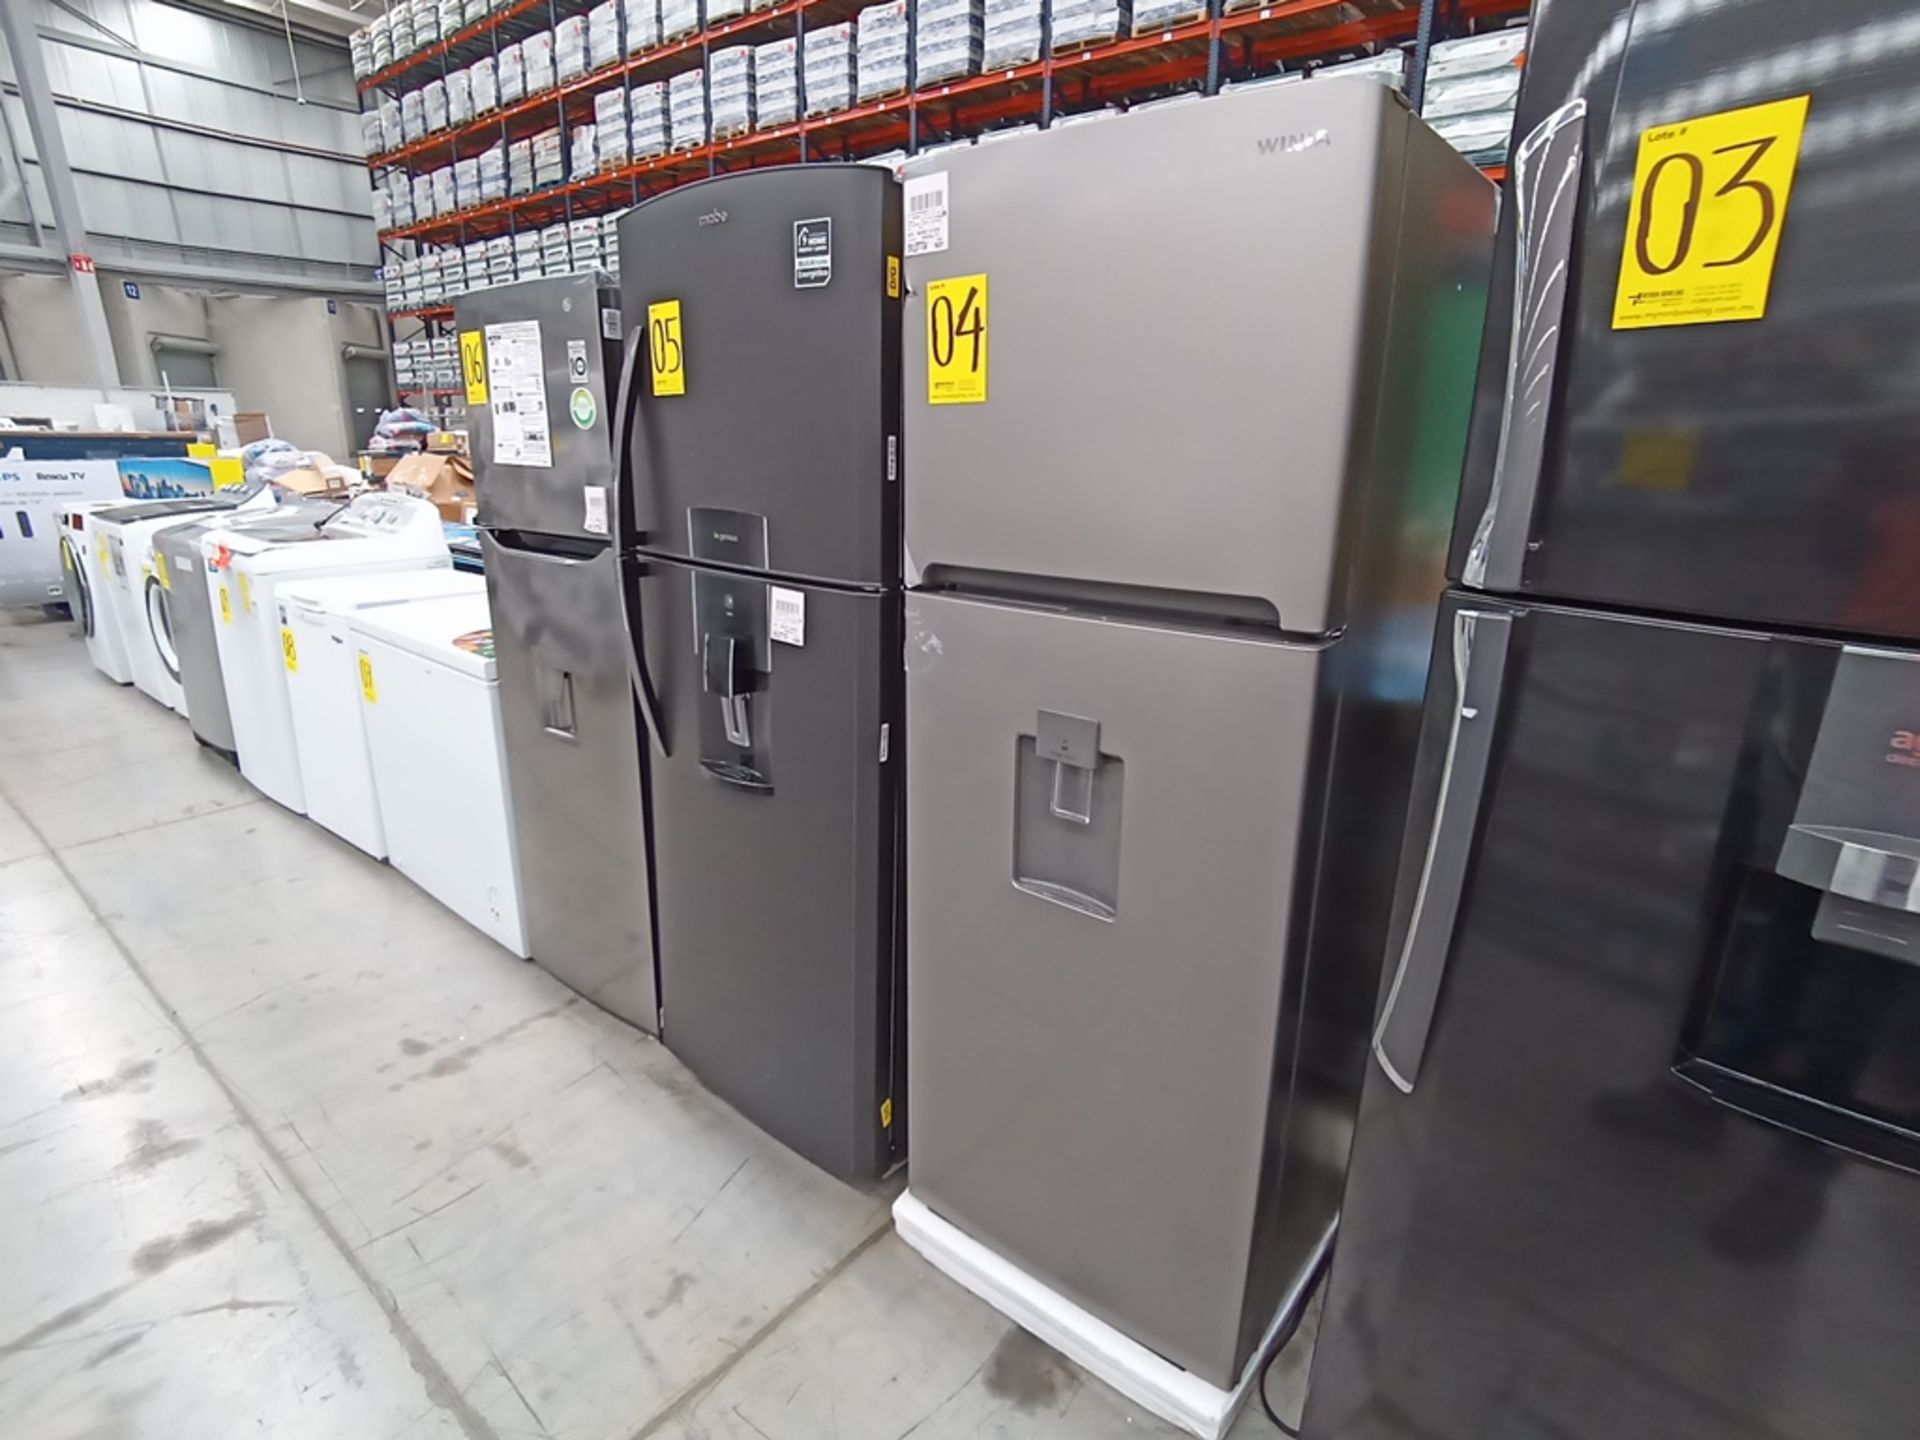 1 Refrigerador con dispensador de agua, Marca Winia, Modelo DFR-32210GMX, Serie MR217N10140659, Col - Image 3 of 10